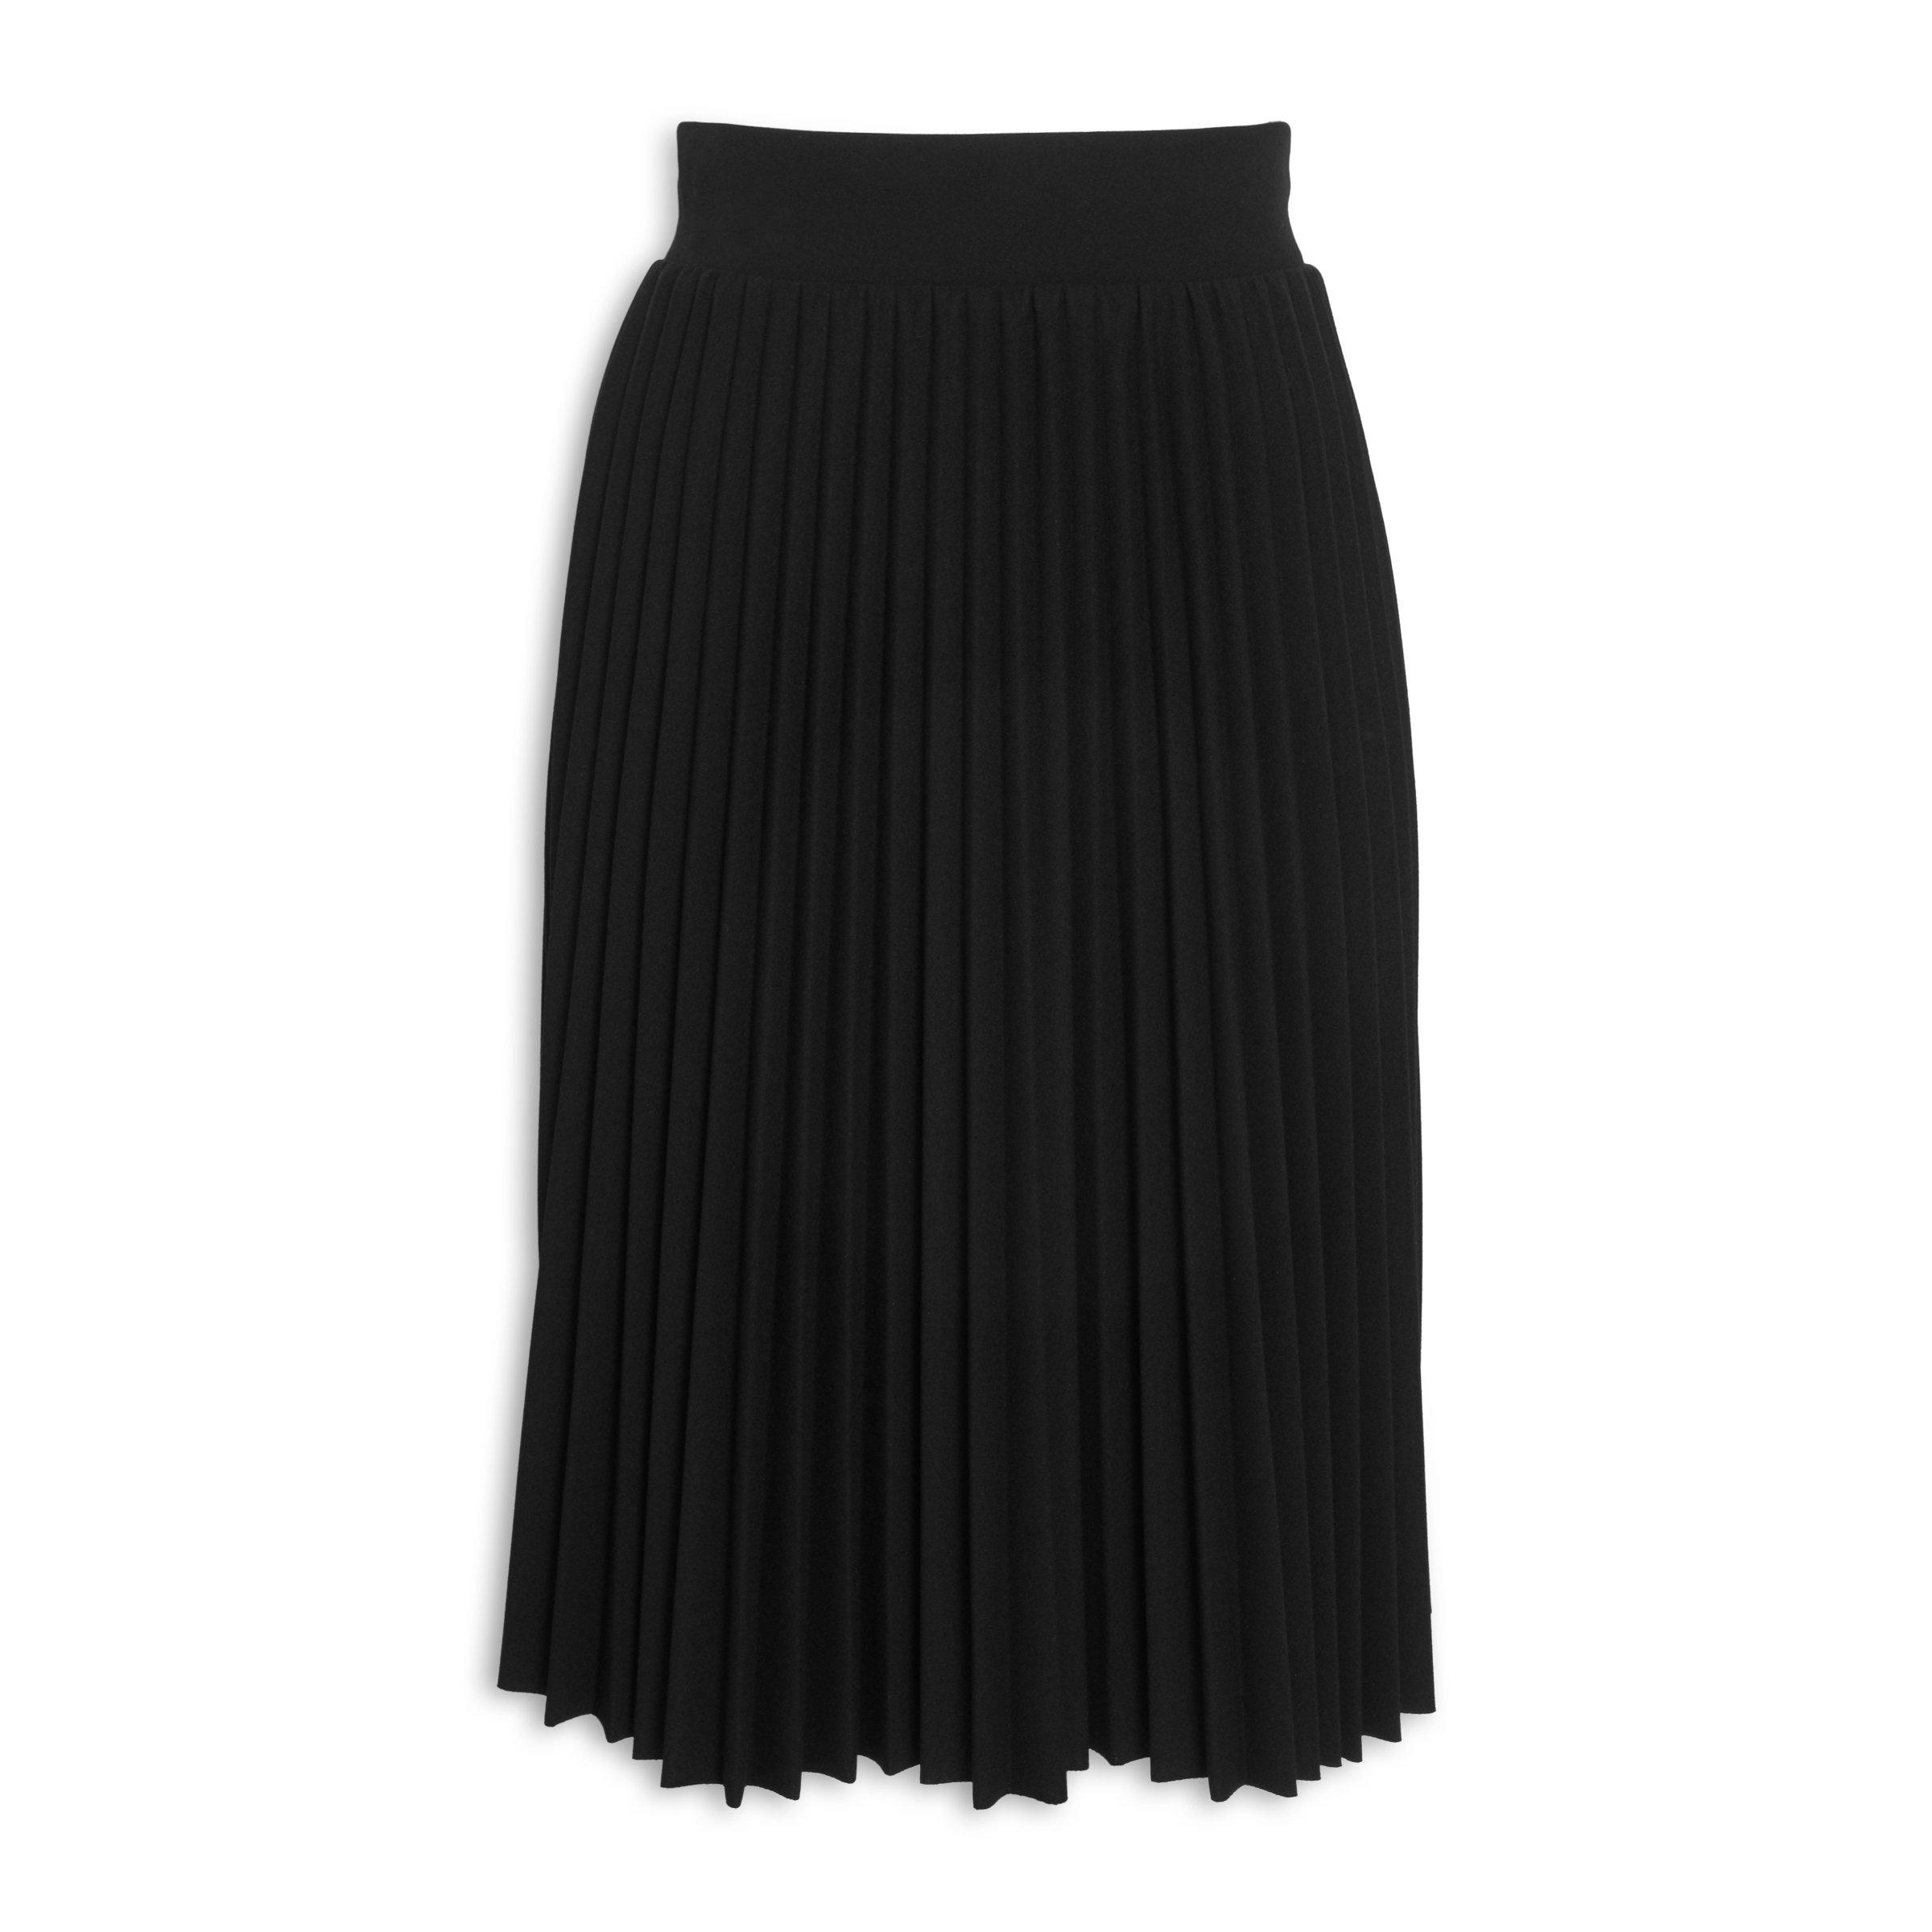 Cheap black skirt